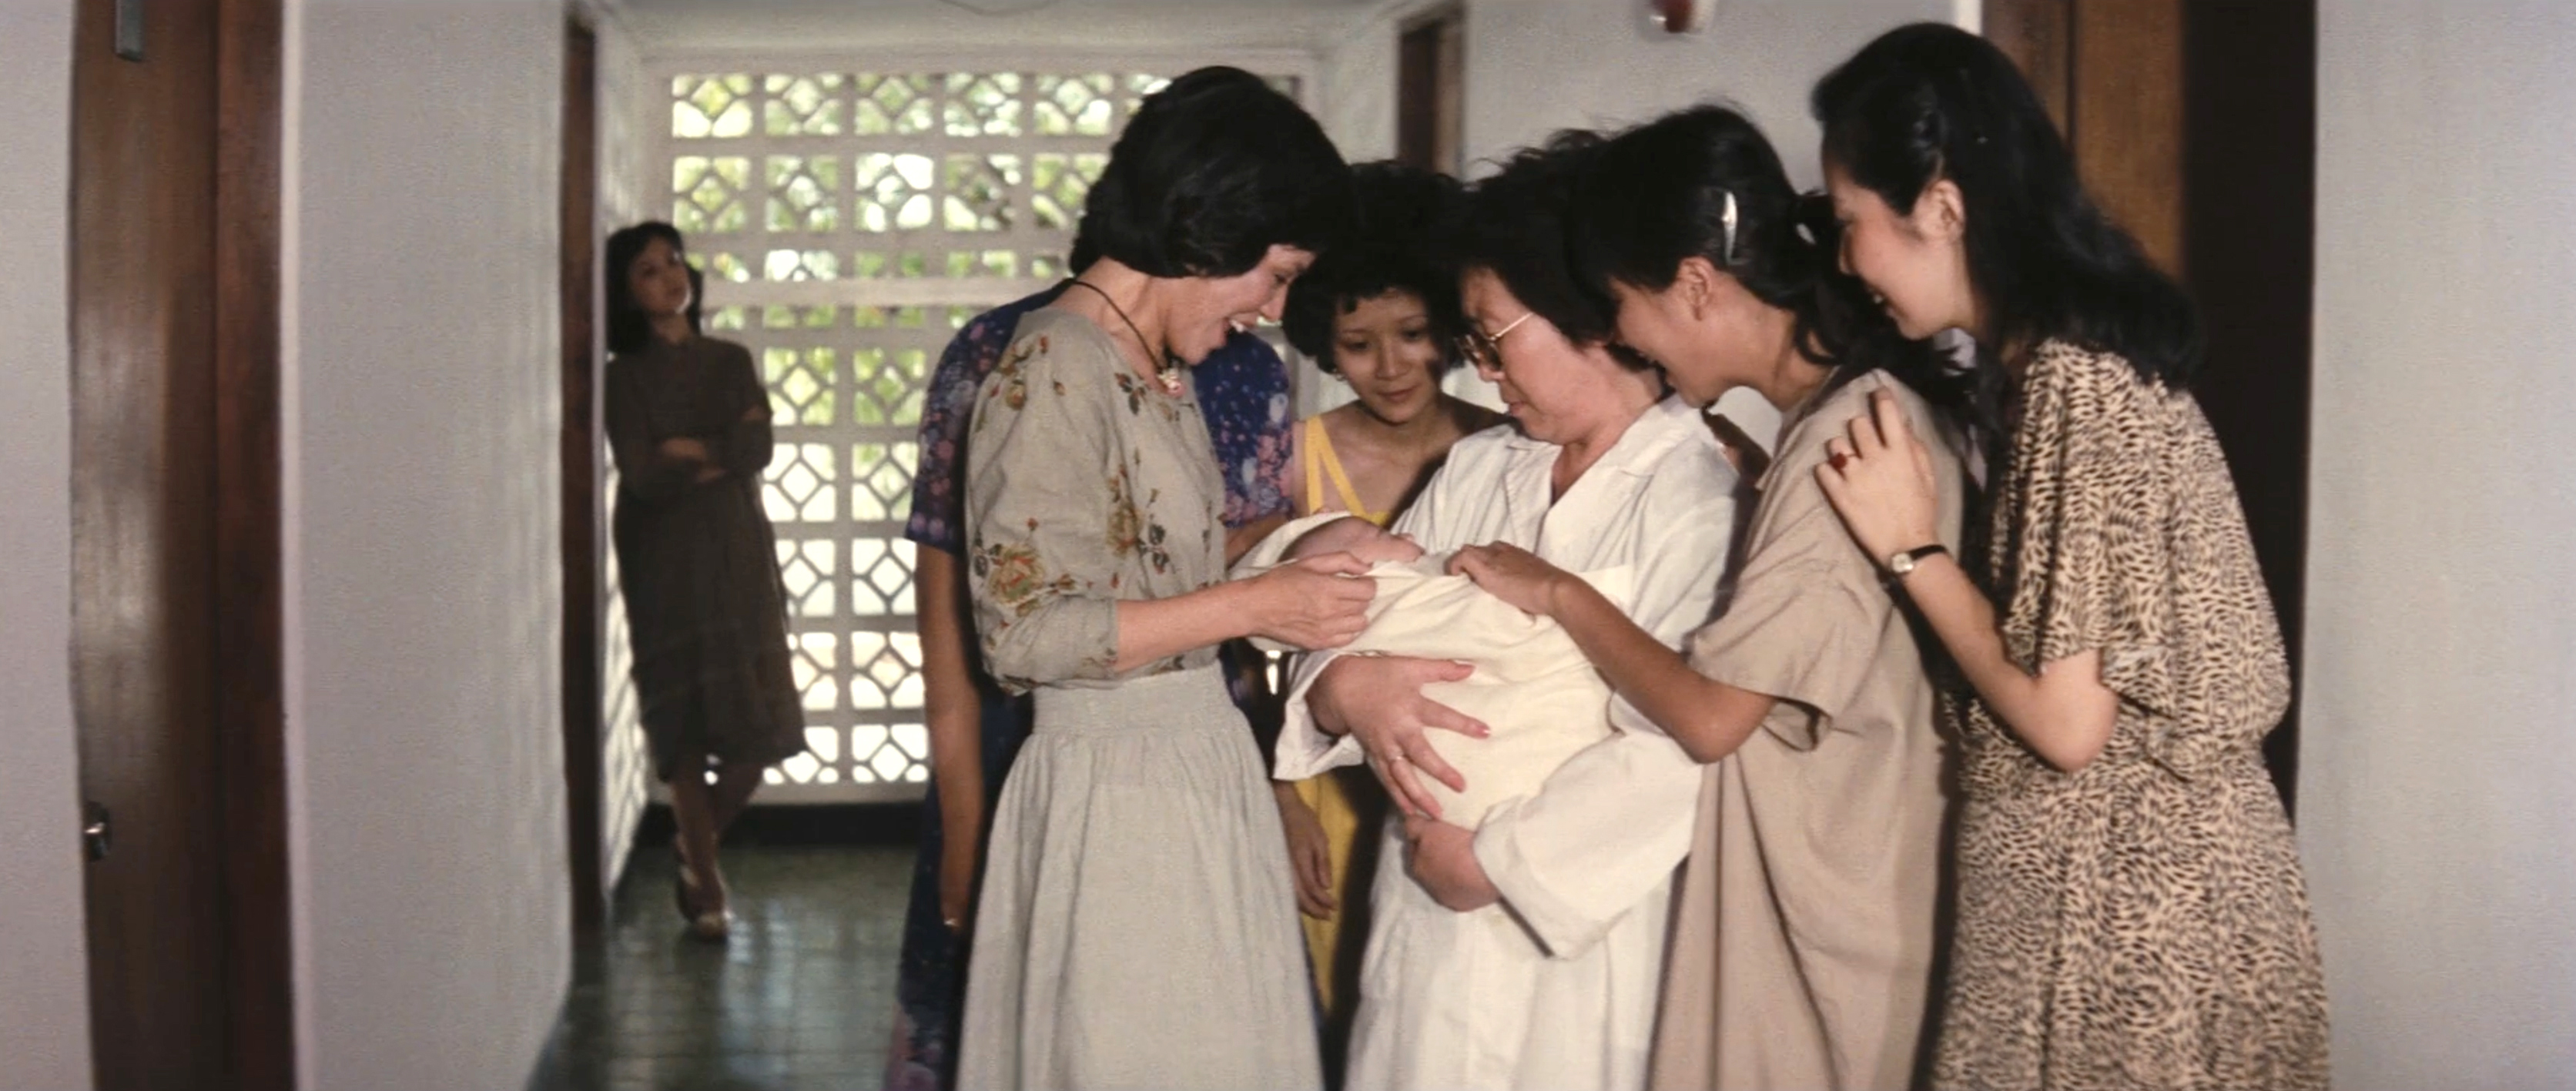 李 美 彌 導 演 的 《 未 婚 媽 媽 》 深 刻 描 繪 女 性 間 互 相 扶 持 的 情 感 。 